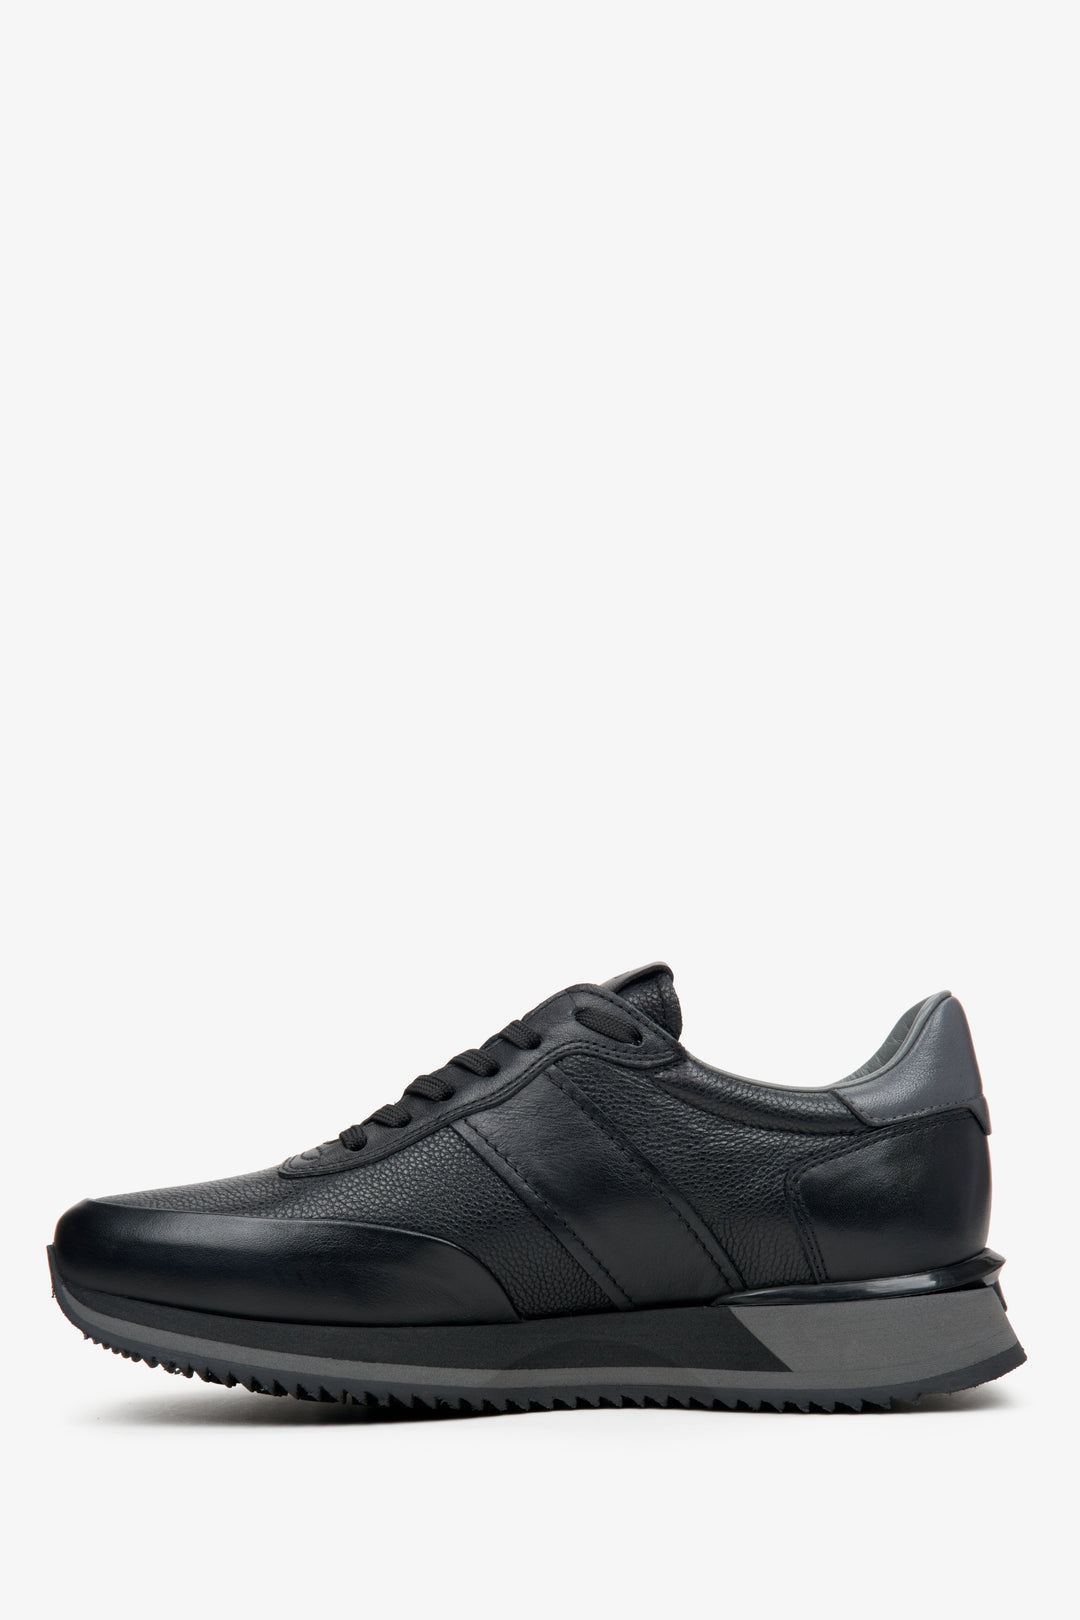 Męskie, czarne, niskie sneakersy marki Estro - profil buta.